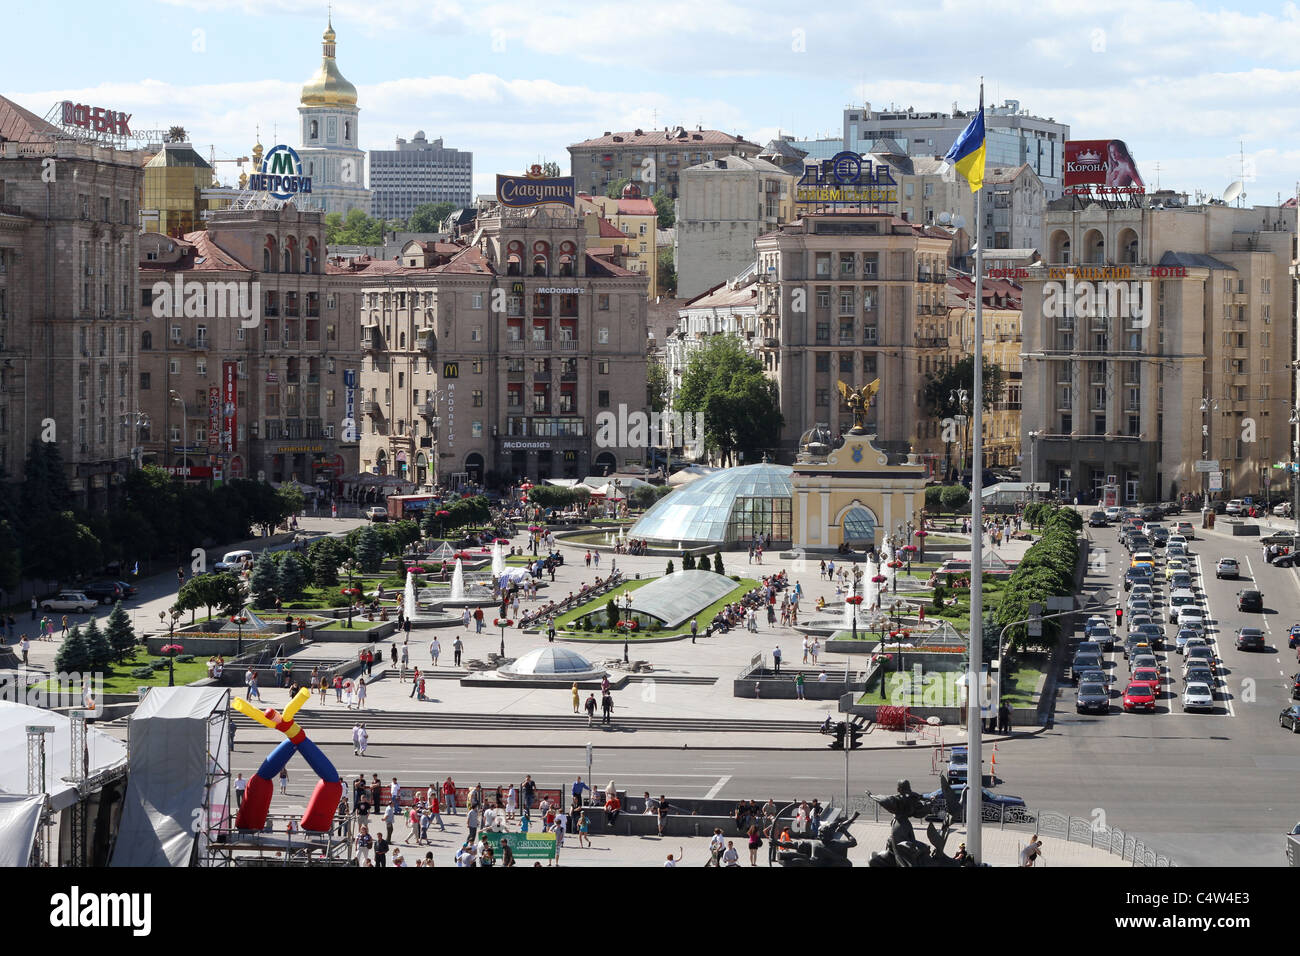 Independence Square in Kiev, Ukraine Stock Photo